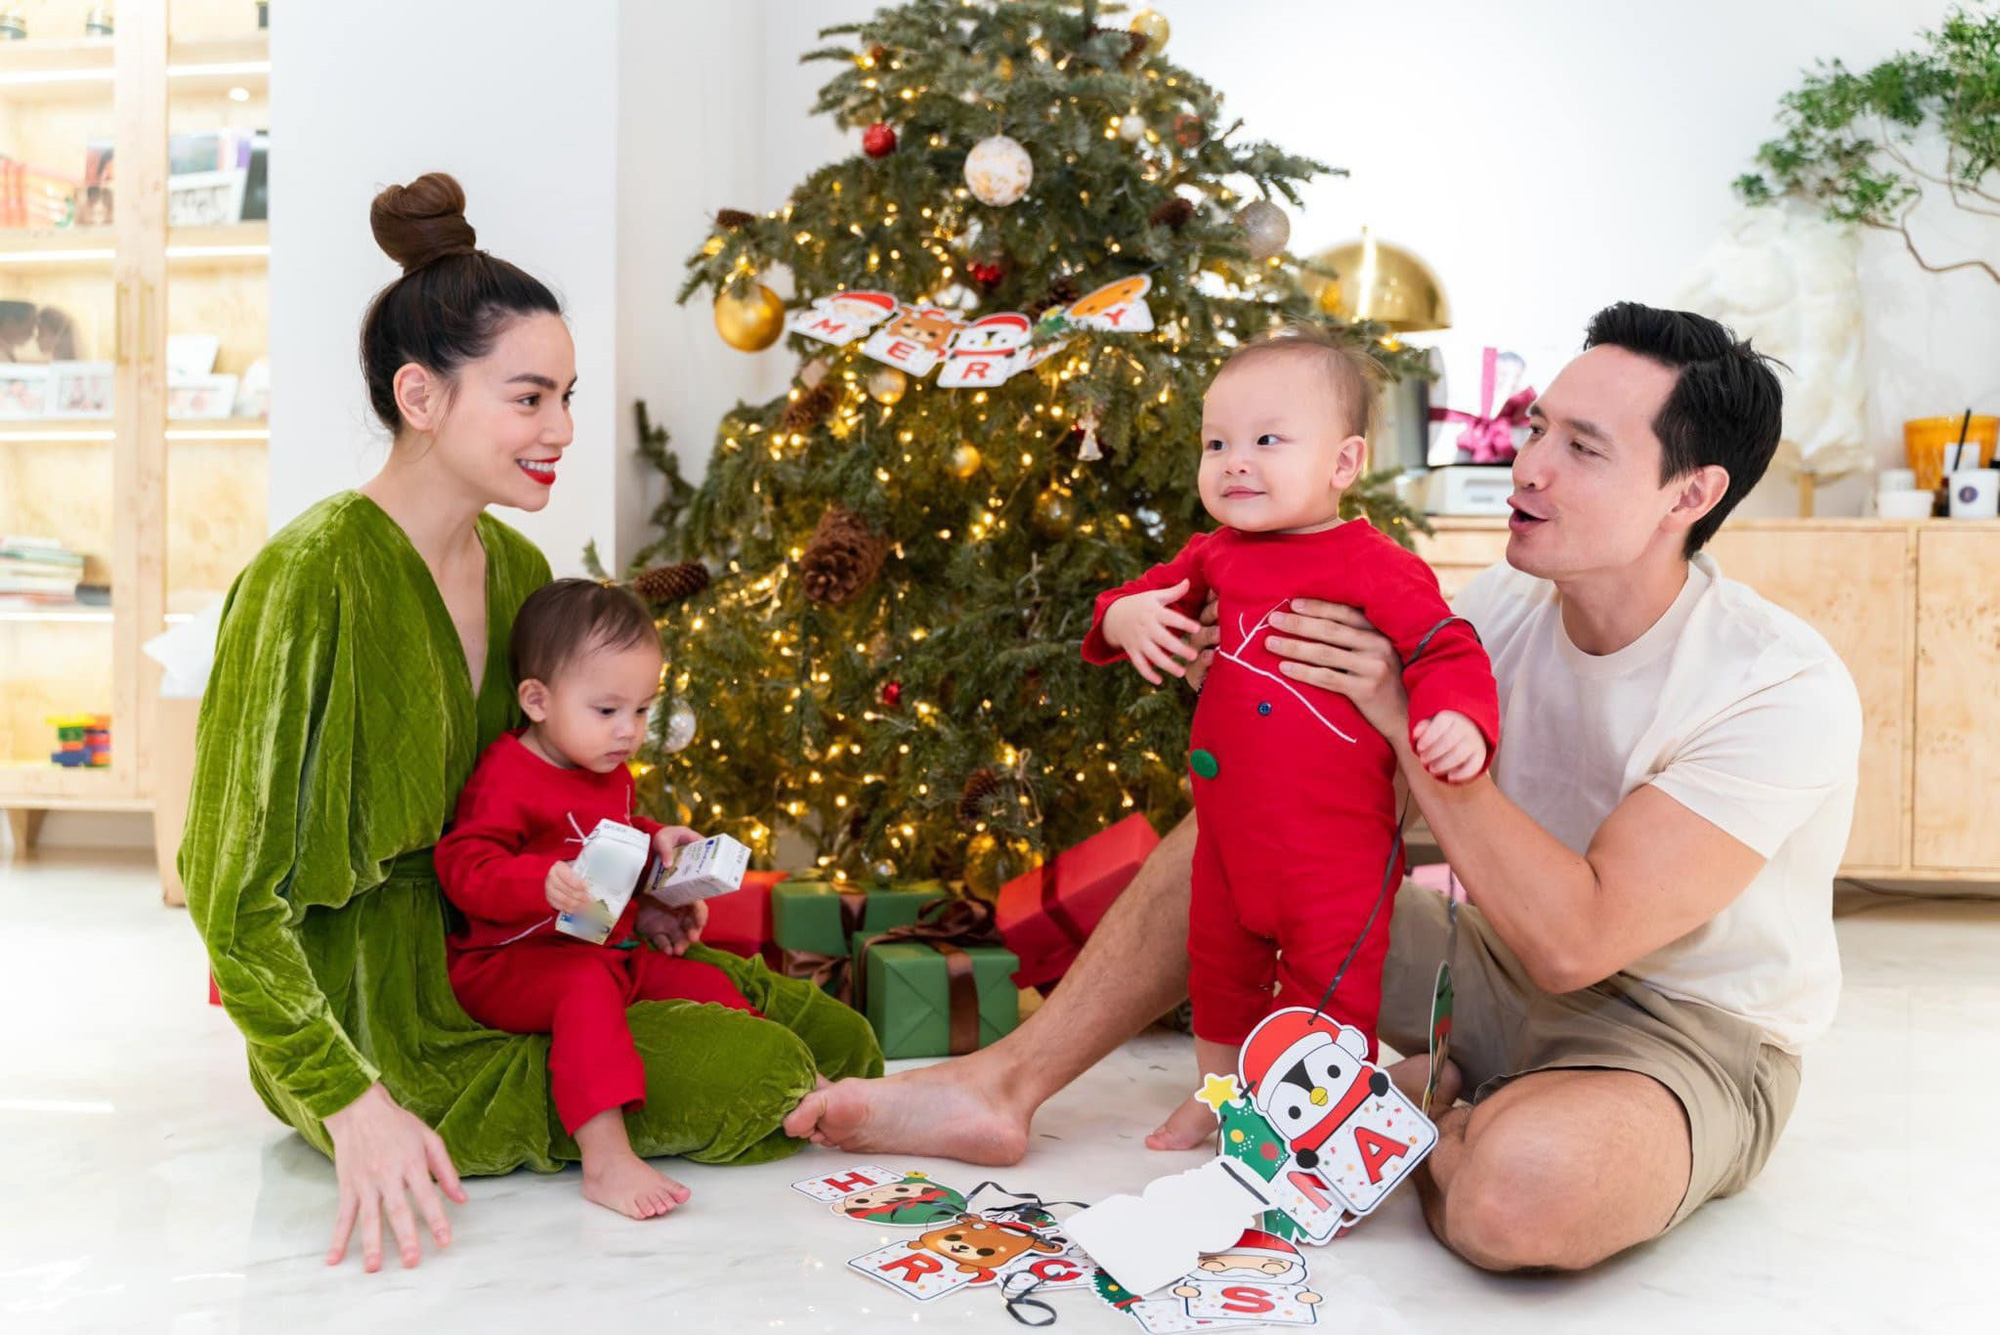 Không kém cạnh nhà Cường Đô La, Hà Hồ - Kim Lý cùng cặp sinh đôi khoe khoảnh khắc đón Noel siêu cưng - Ảnh 3.